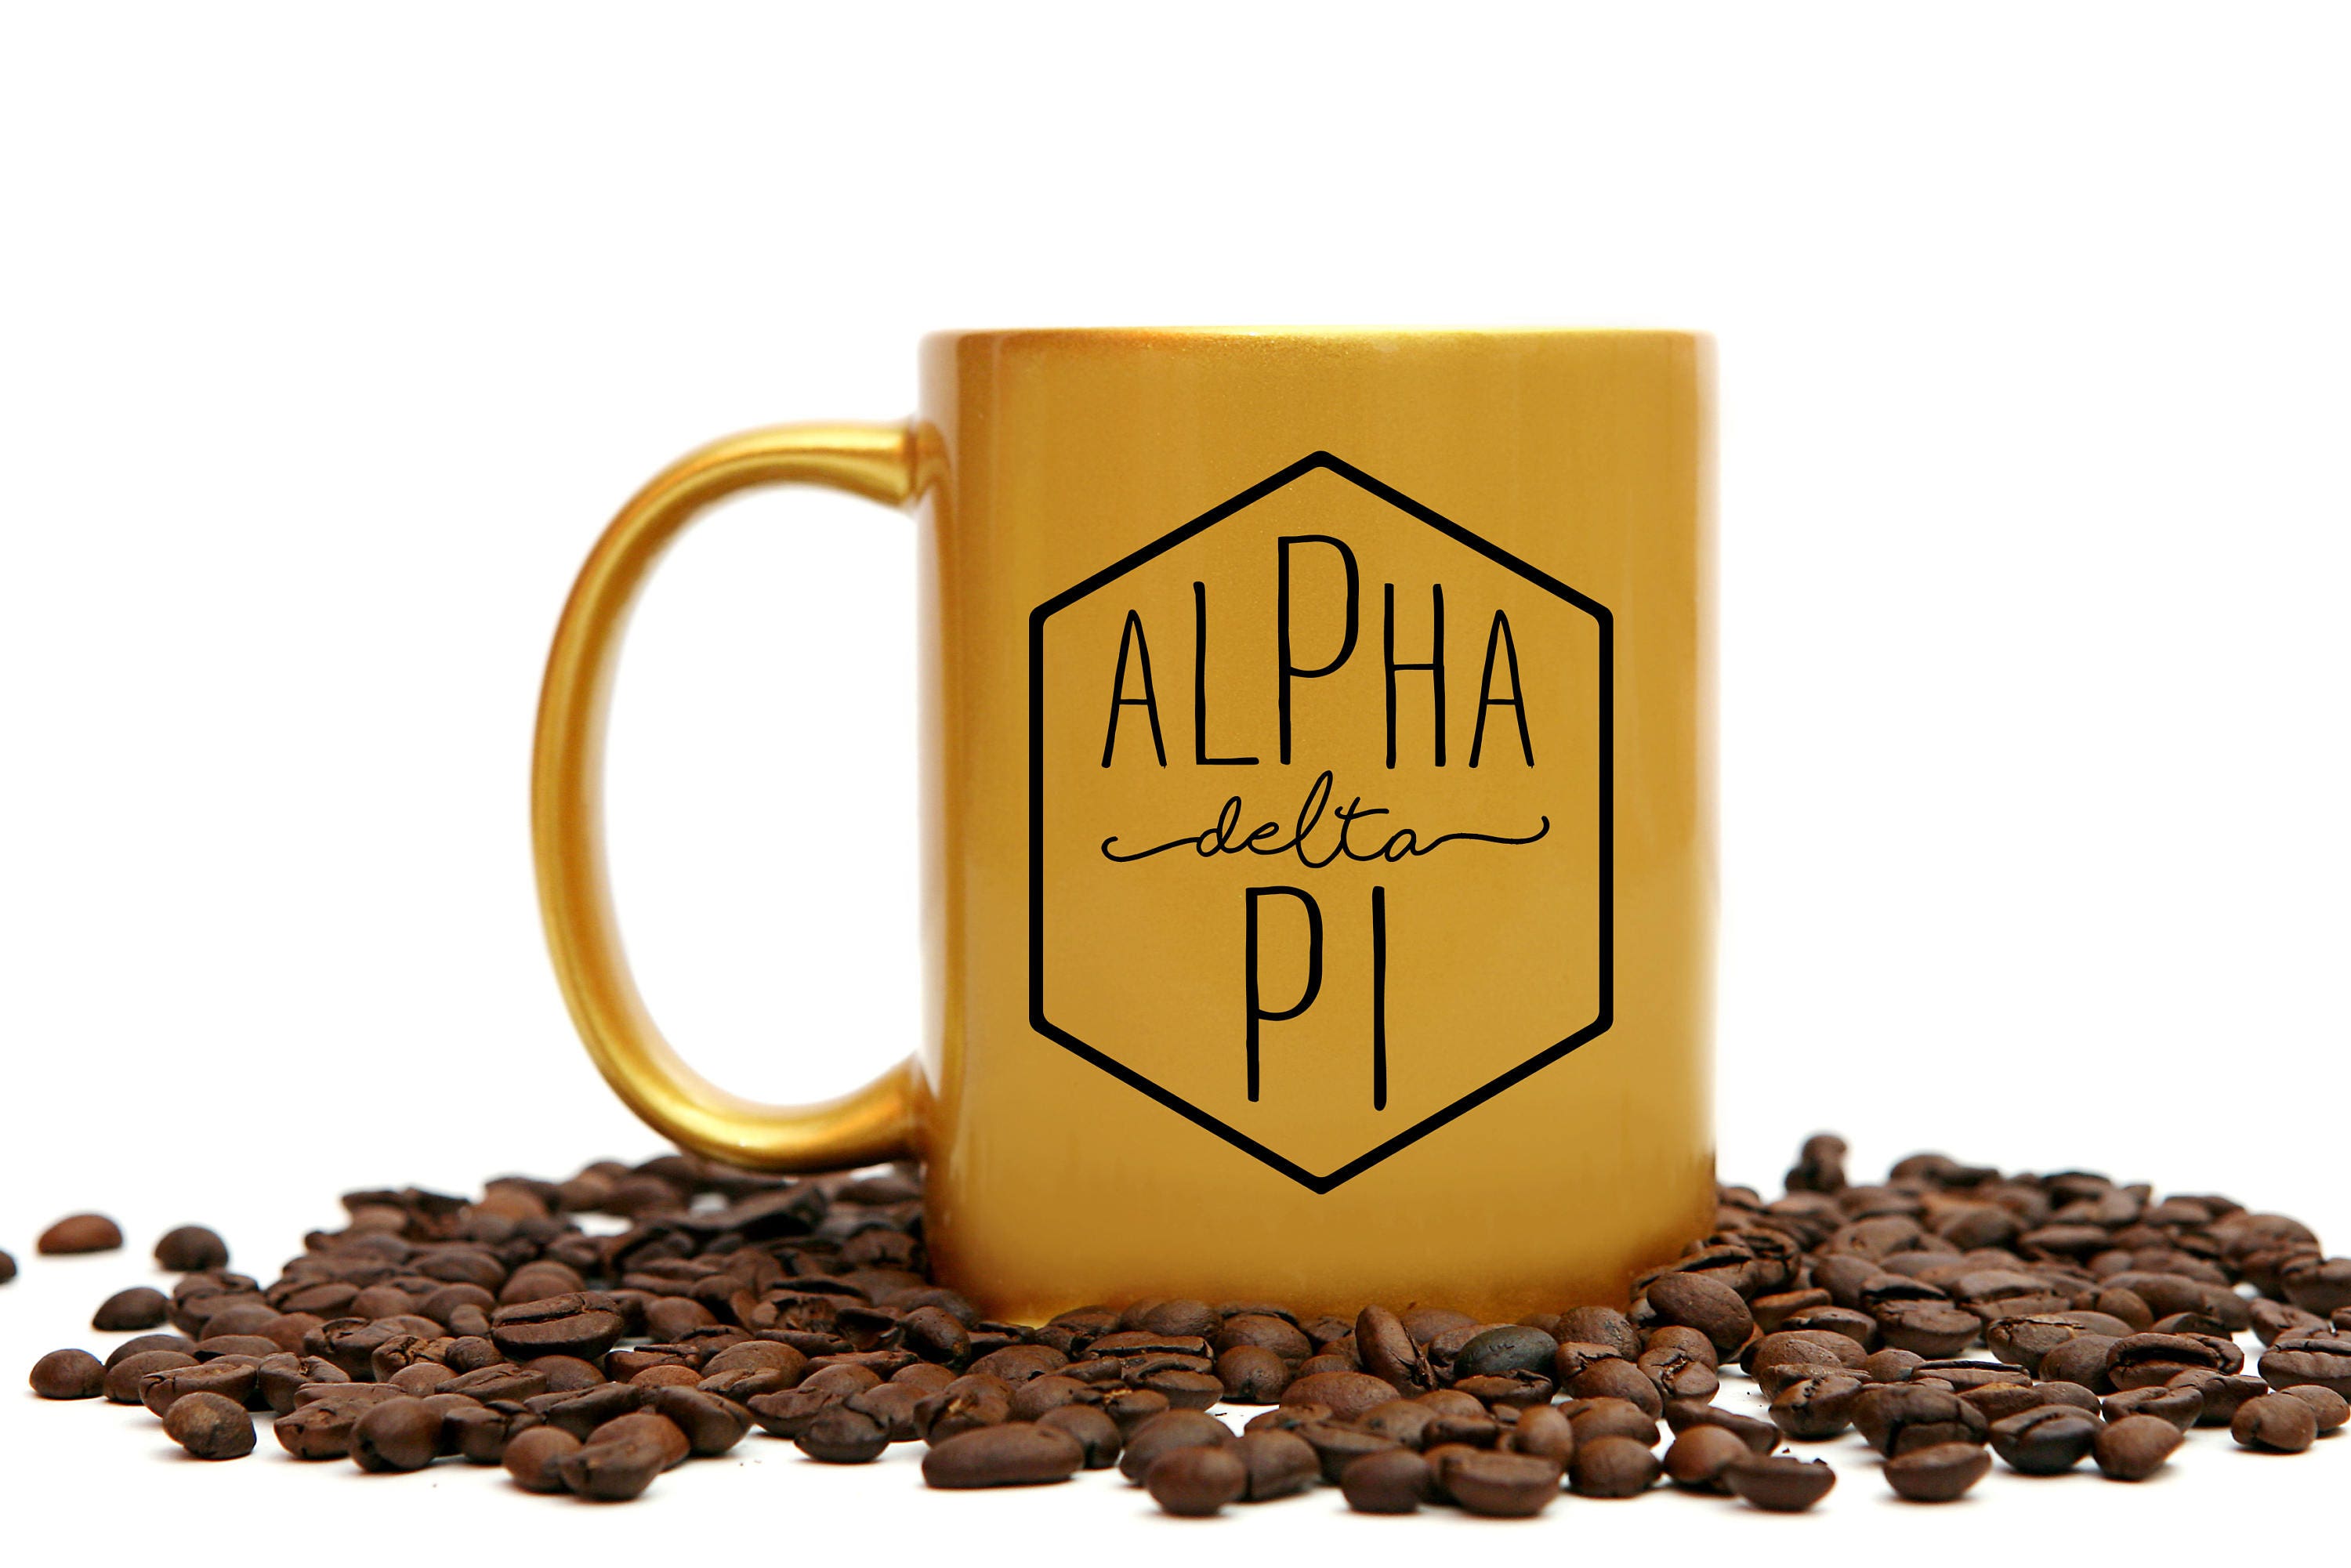 Alpha Delta Pi Gold Coffee Mug - Go Greek Chic